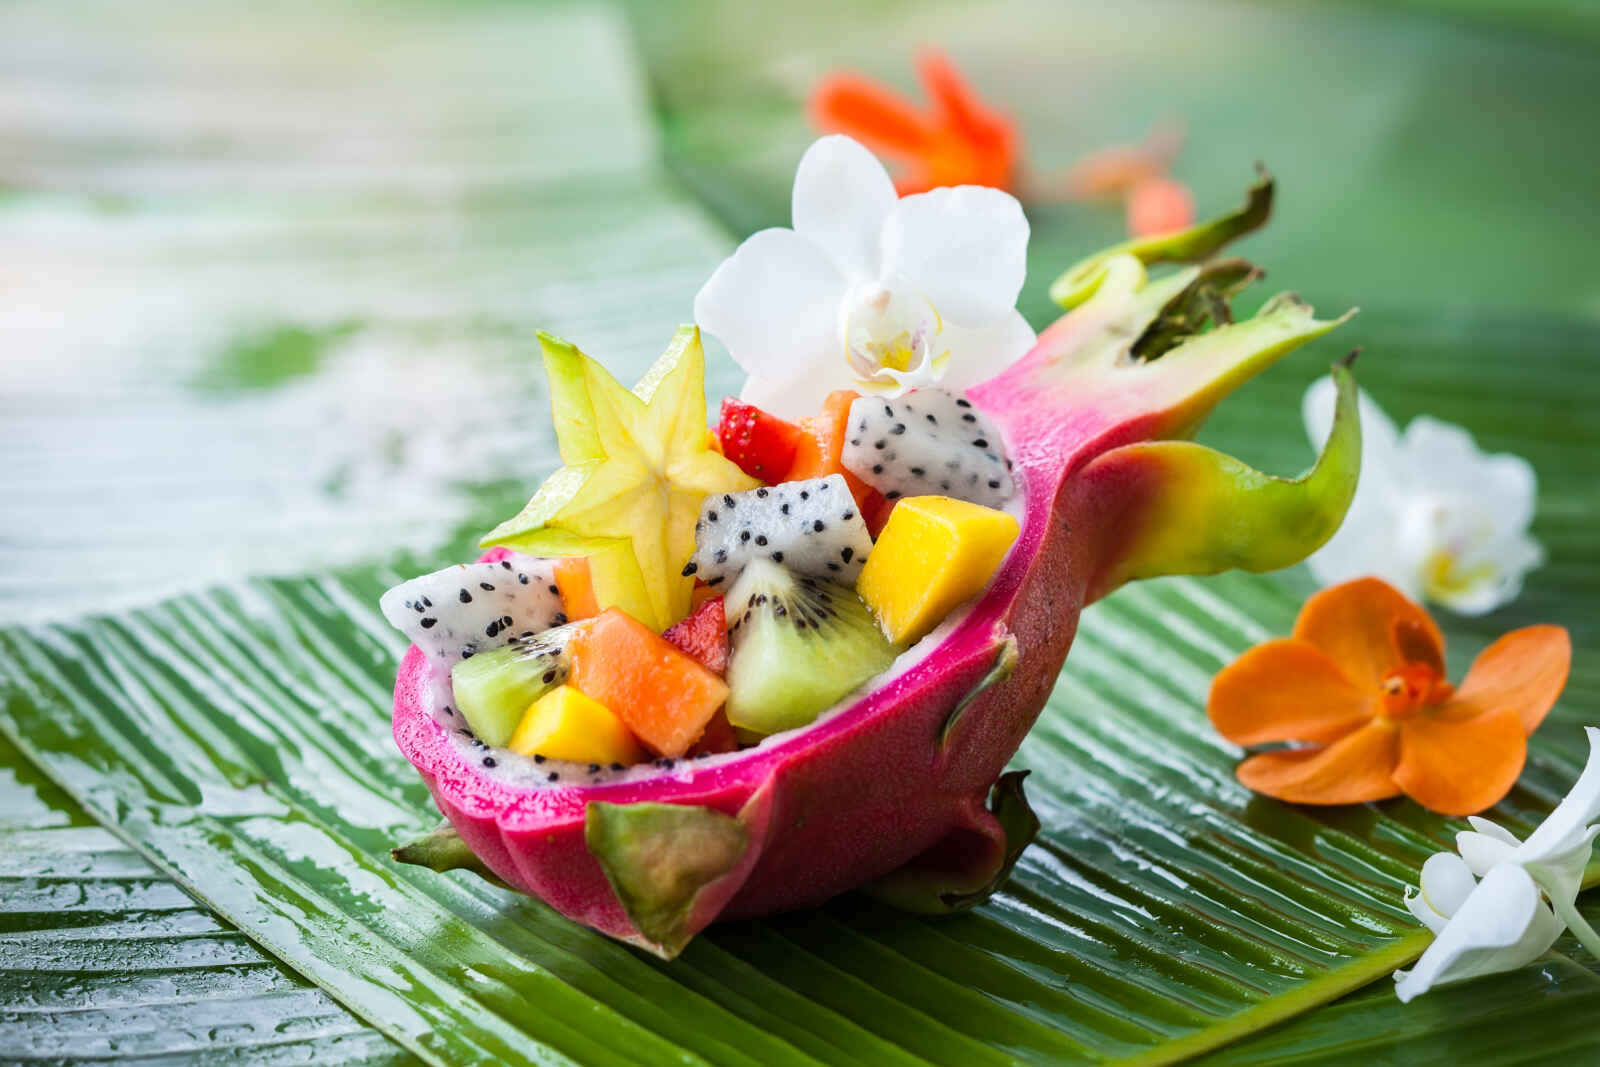 Salade de fruits exotiques servie dans un demi-fruit du dragon